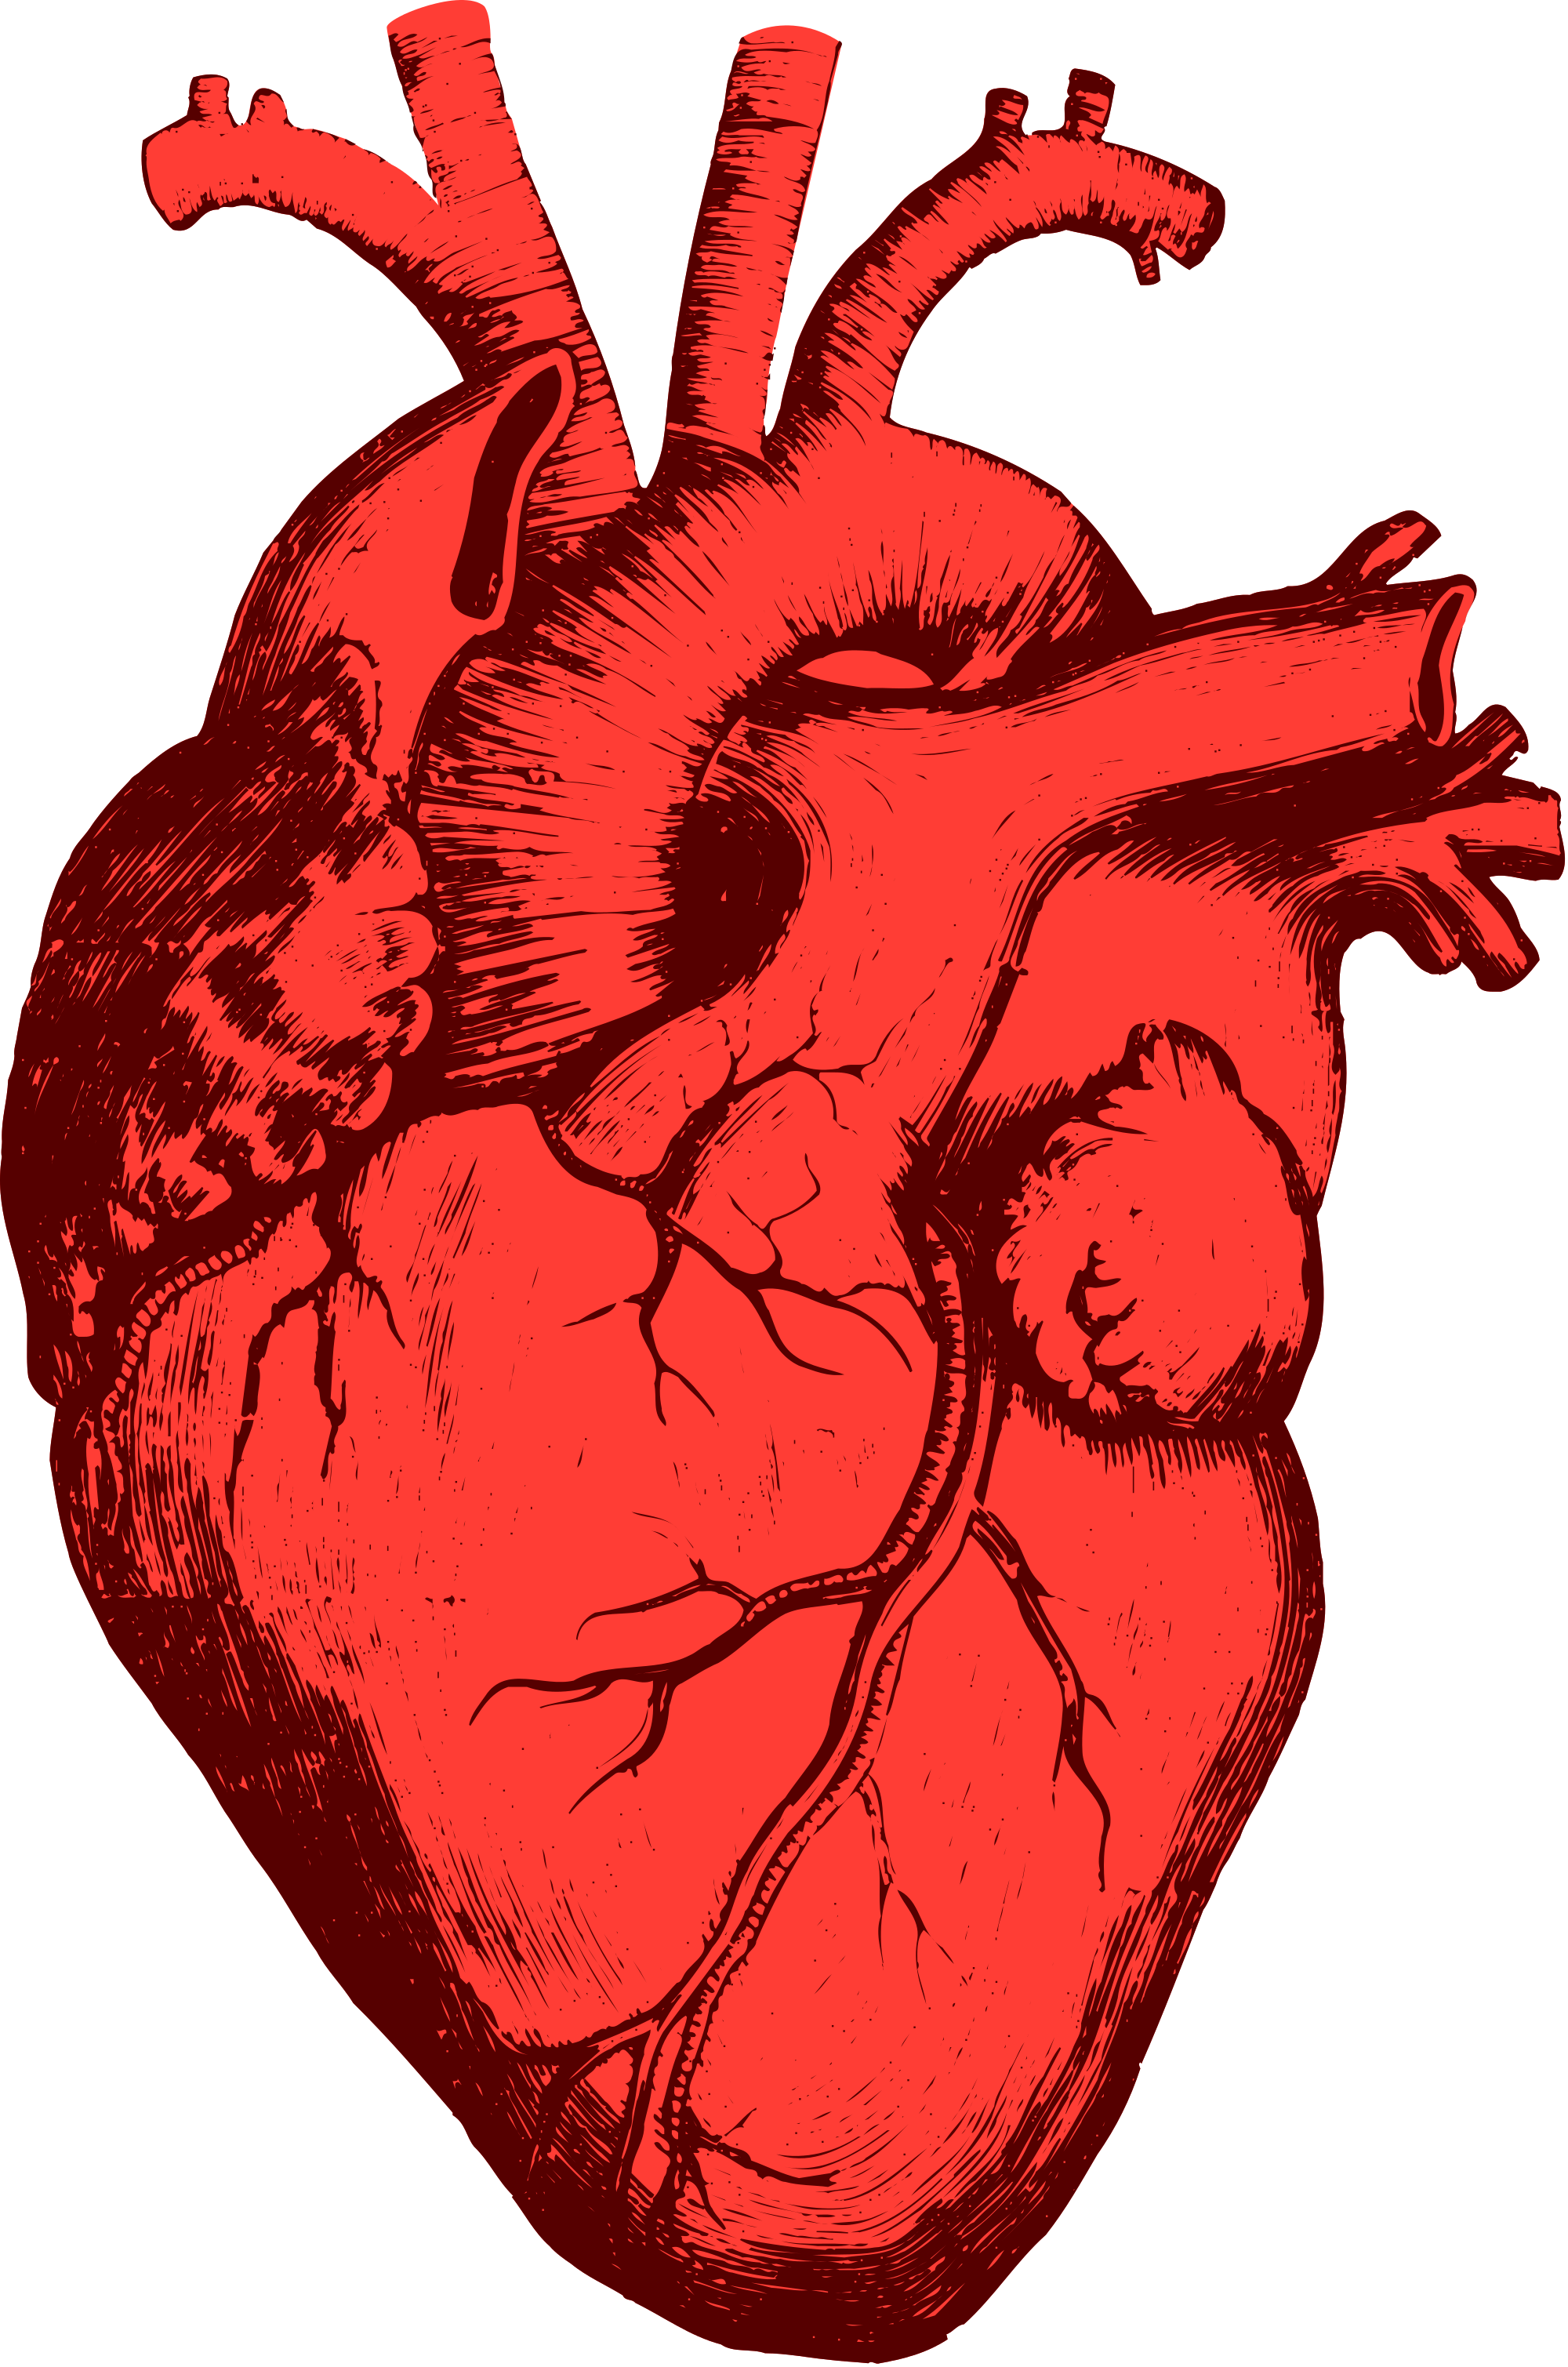 Foto de PNG del corazón humano rojo